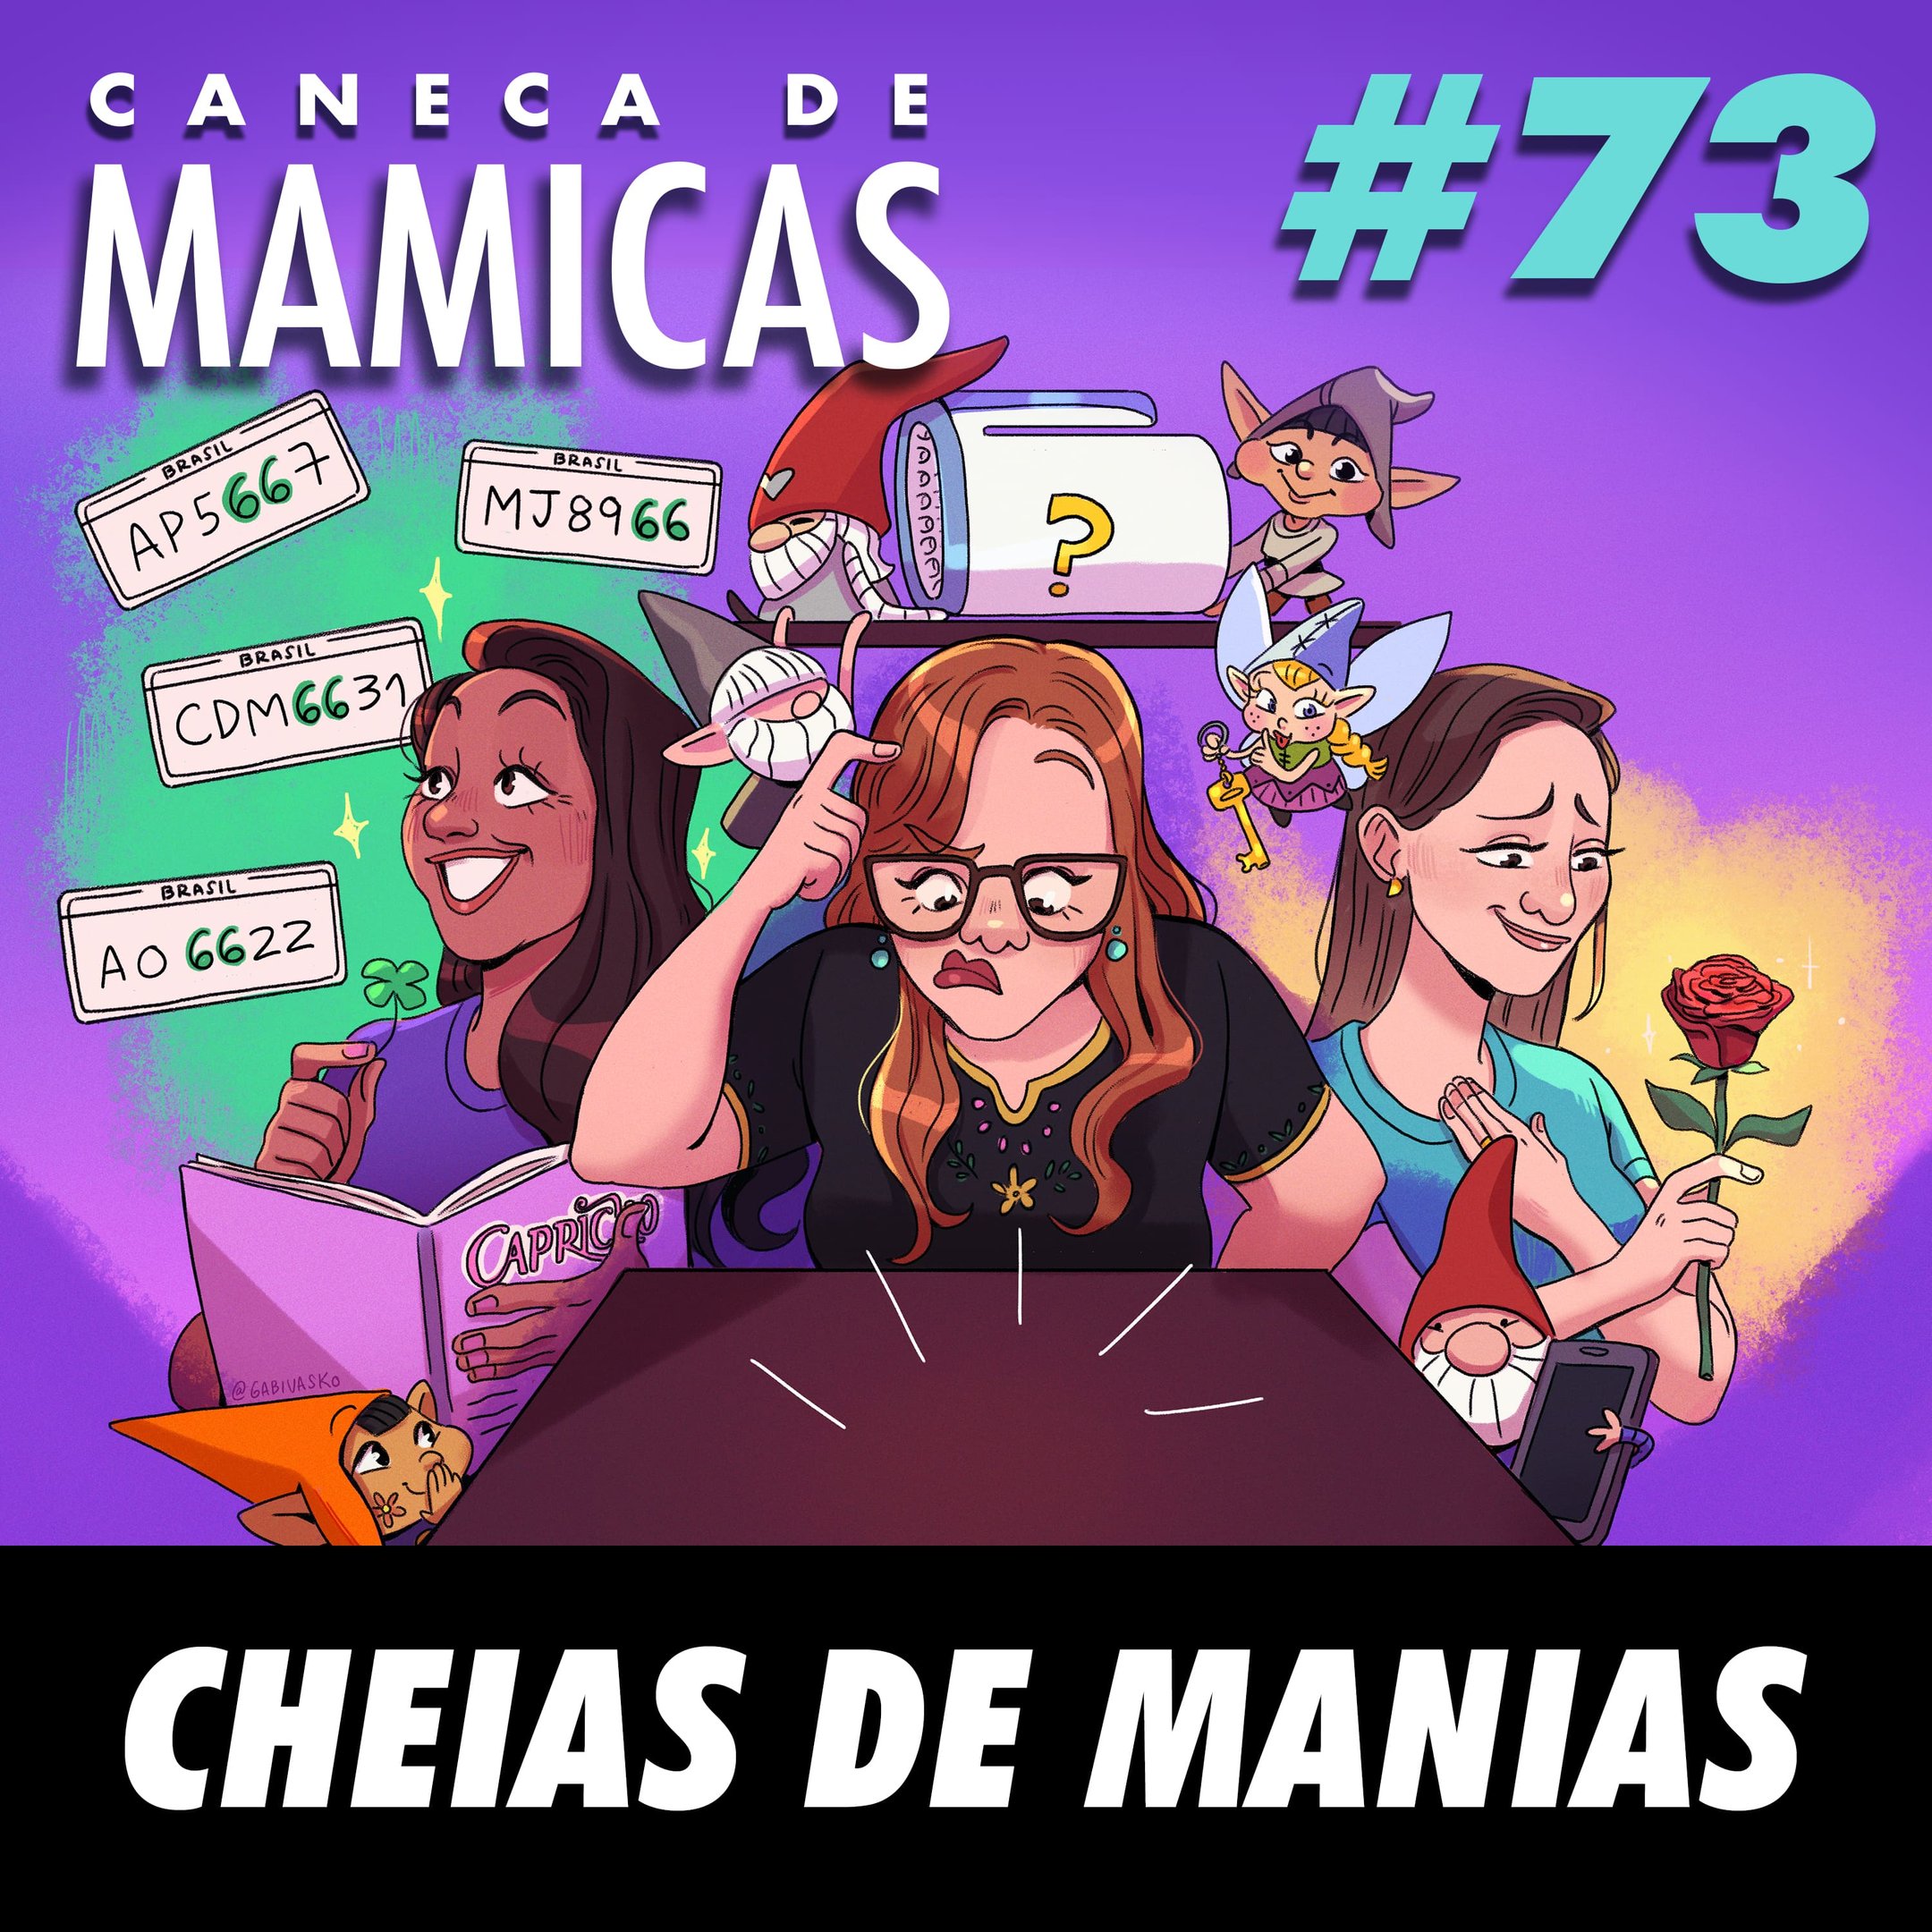 Caneca de Mamicas 73 - Cheias de manias